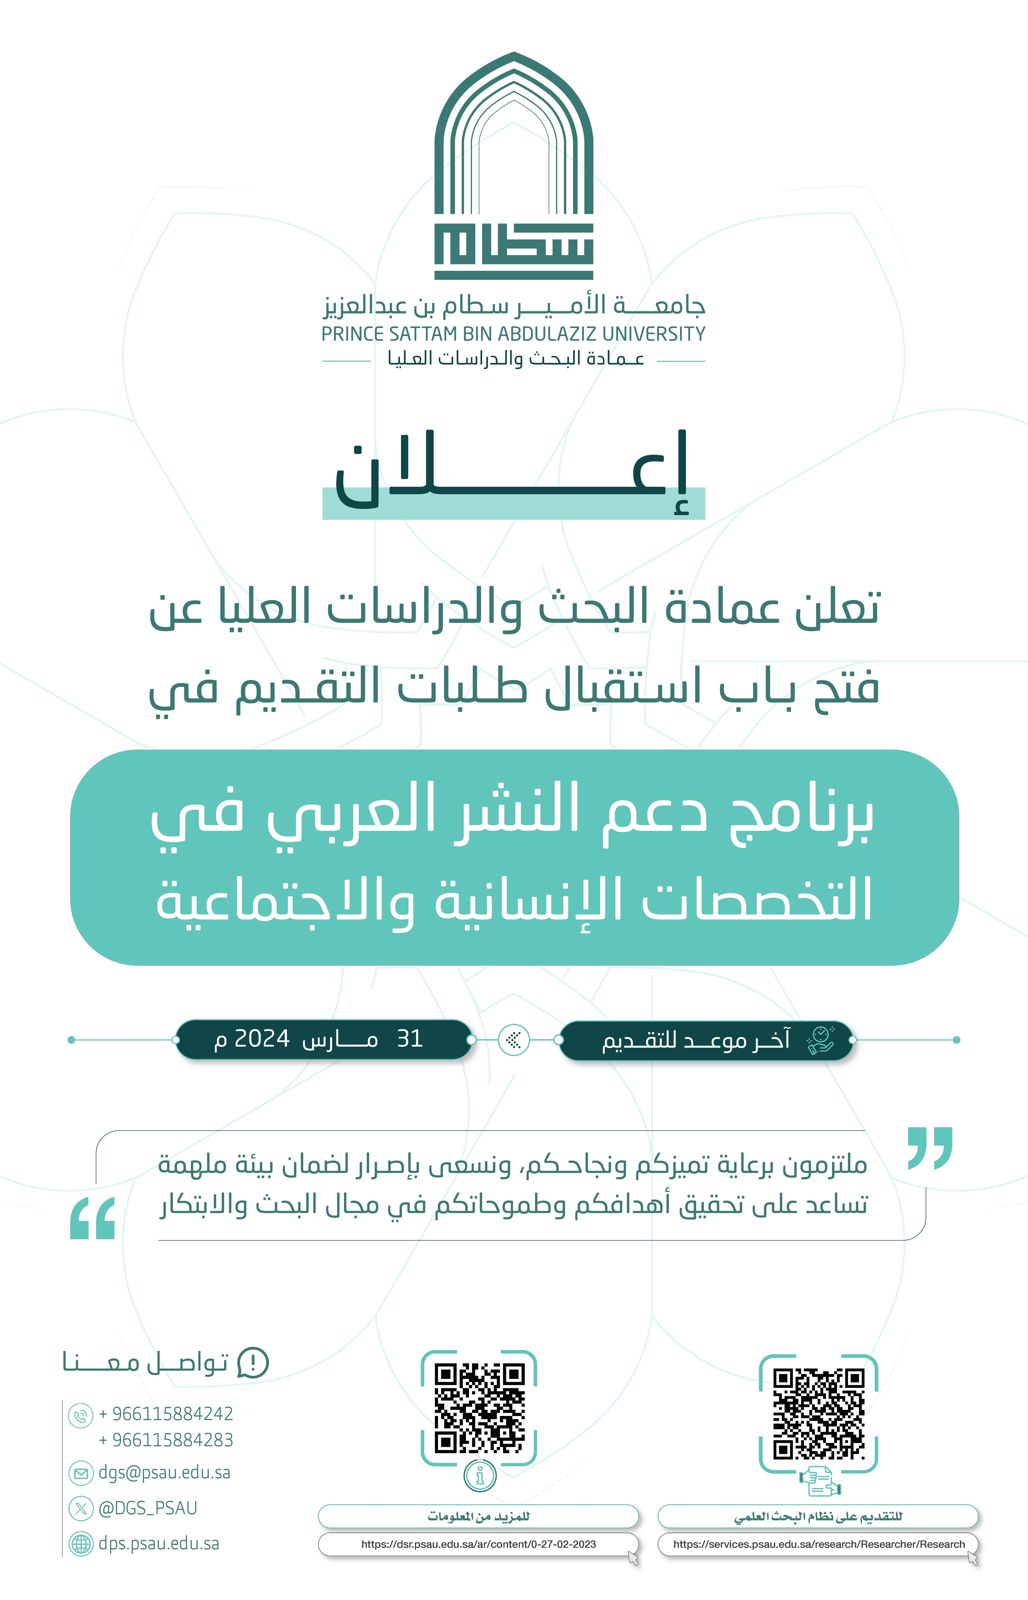 تعلن عمادة البحث والدراسات العليا عن برنامج دعم النشر العربي في التخصصات الإنسانية والاجتماعية، كما هو موضح بالإعلان المرفق.